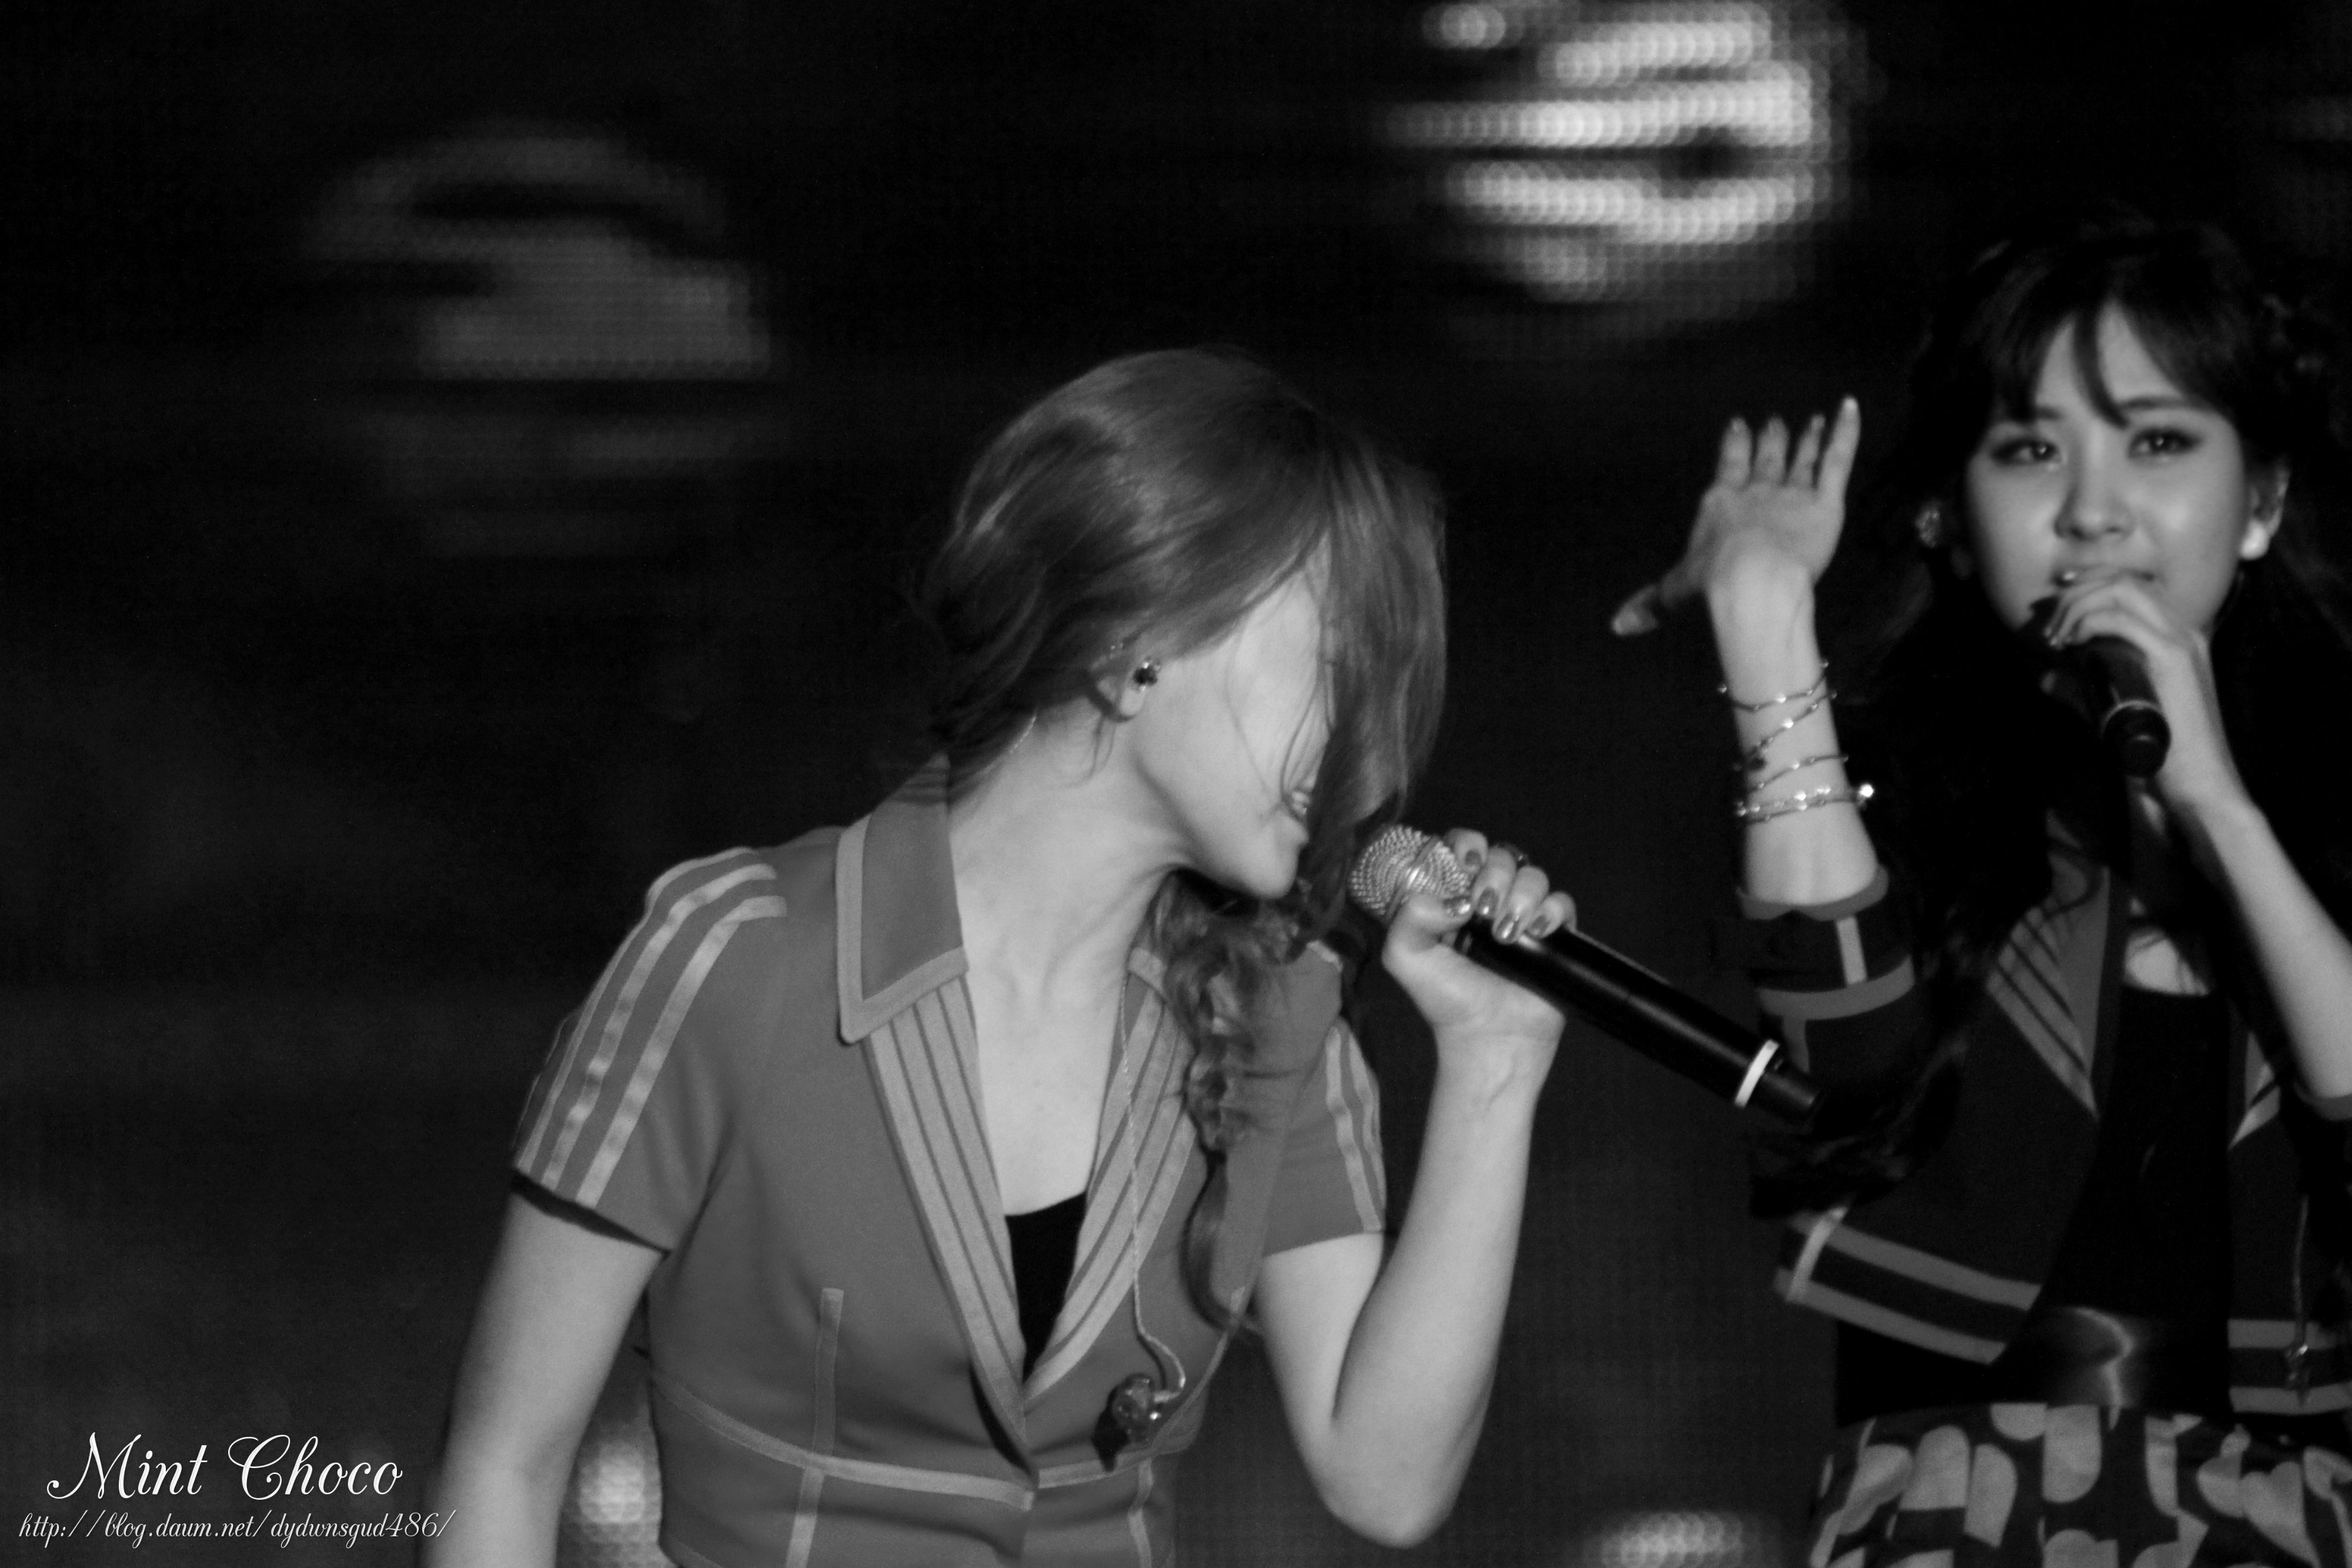 [PIC][30-05-2013]TaeTiSeo biểu diễn tại "PyeongTaek Concert" vào tối nay 23534D3851A7B77B2F2451